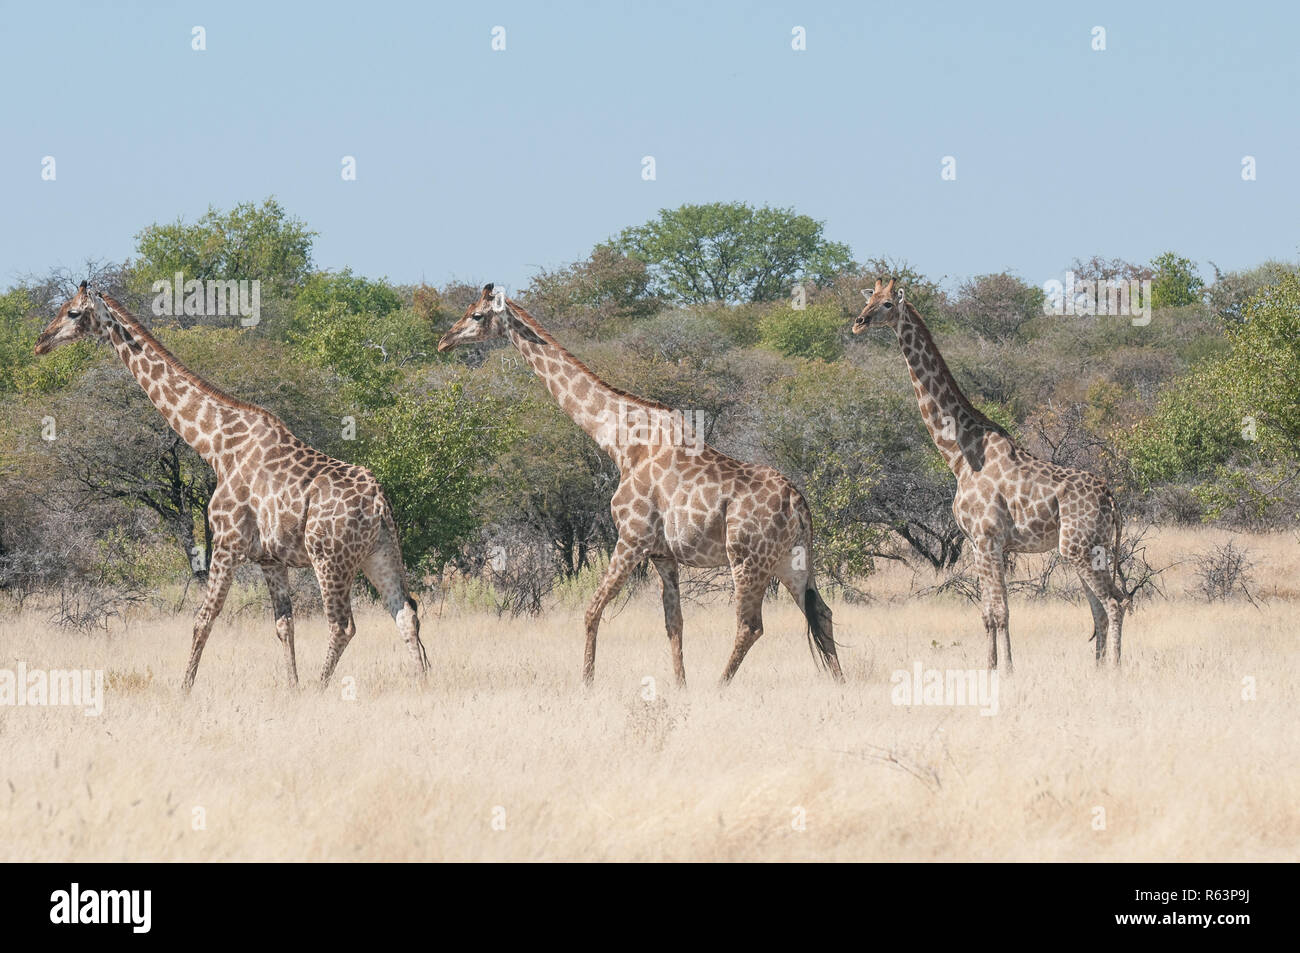 Three giraffes Stock Photo